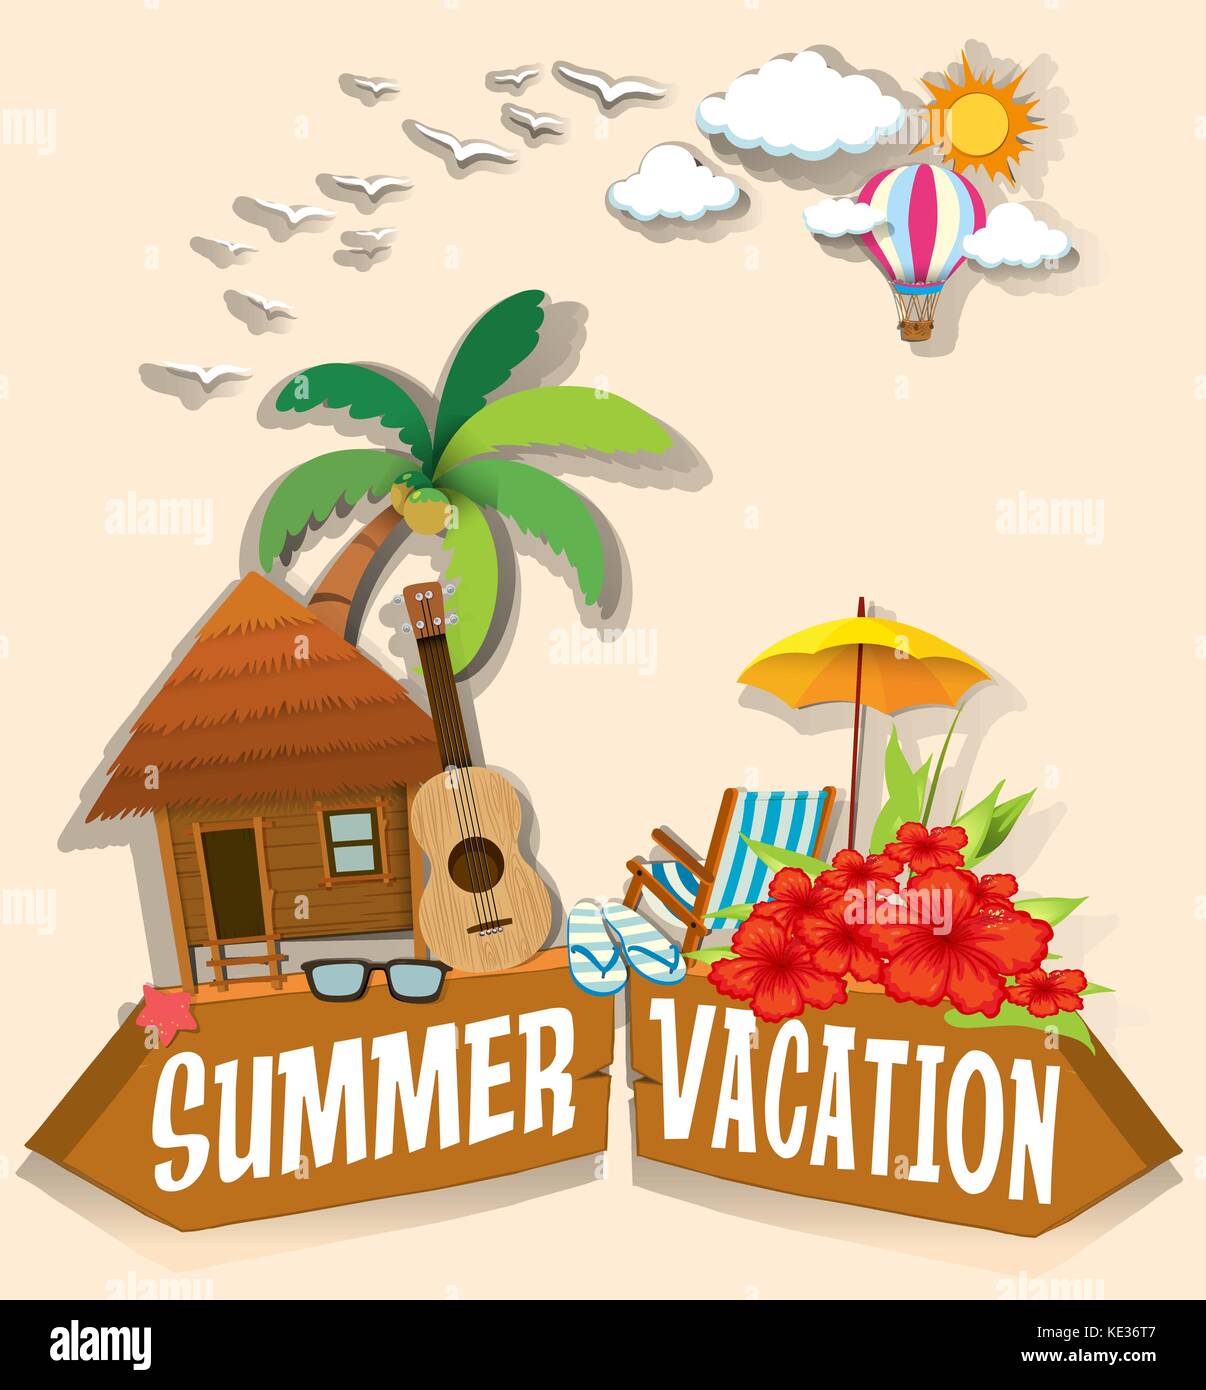 summer vacation drawing